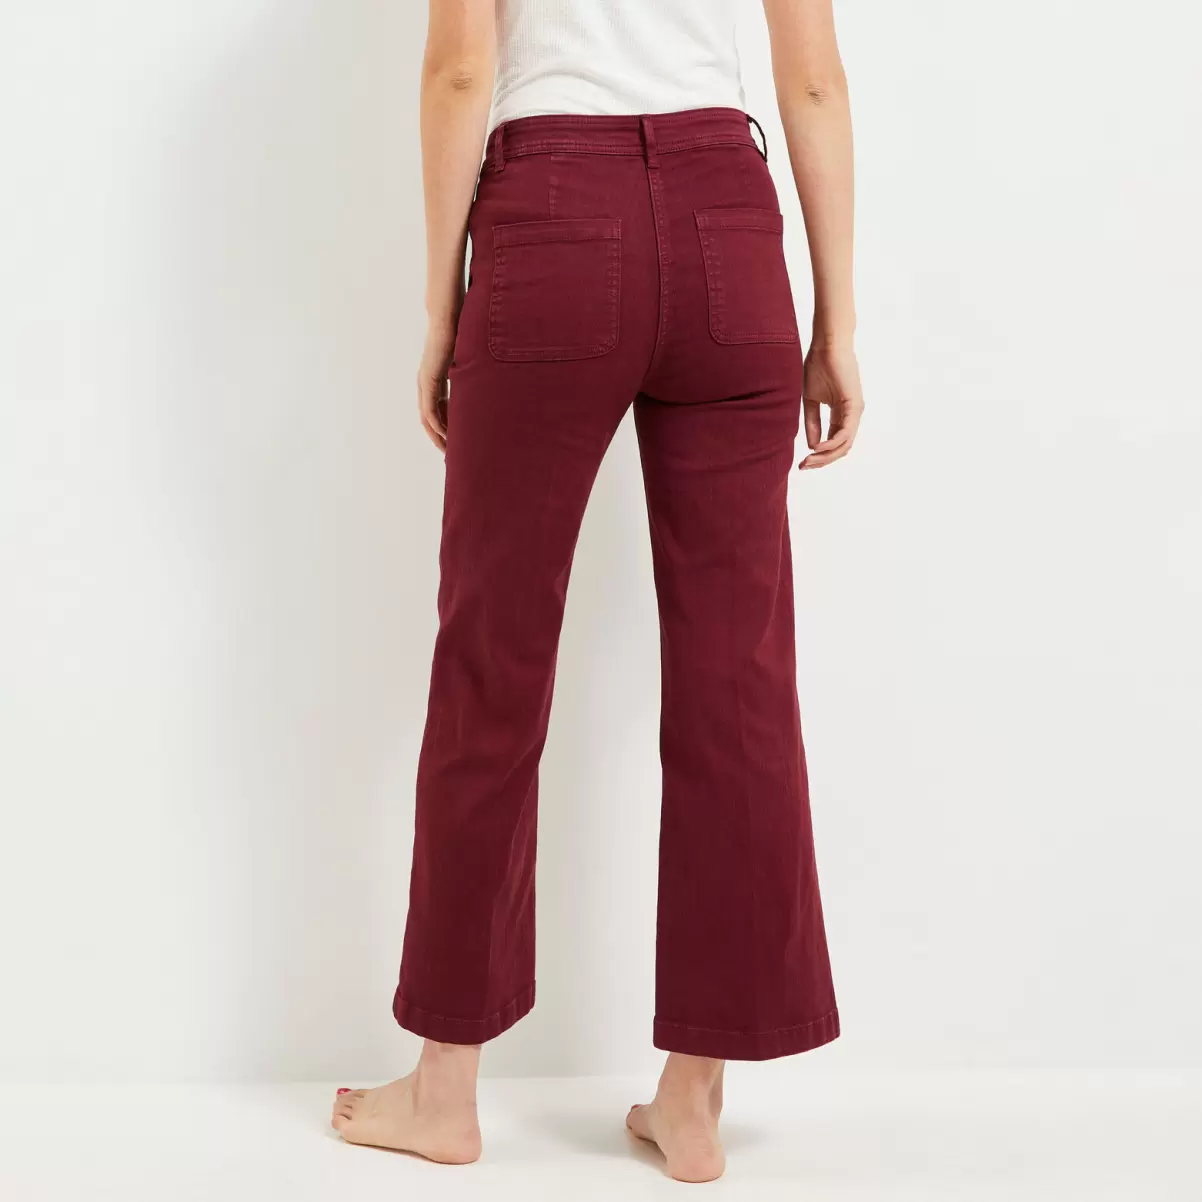 Femme Esthétique Pantalon Flare Raccourci Femme Grain De Malic Jeans Rouge Noirci - 1